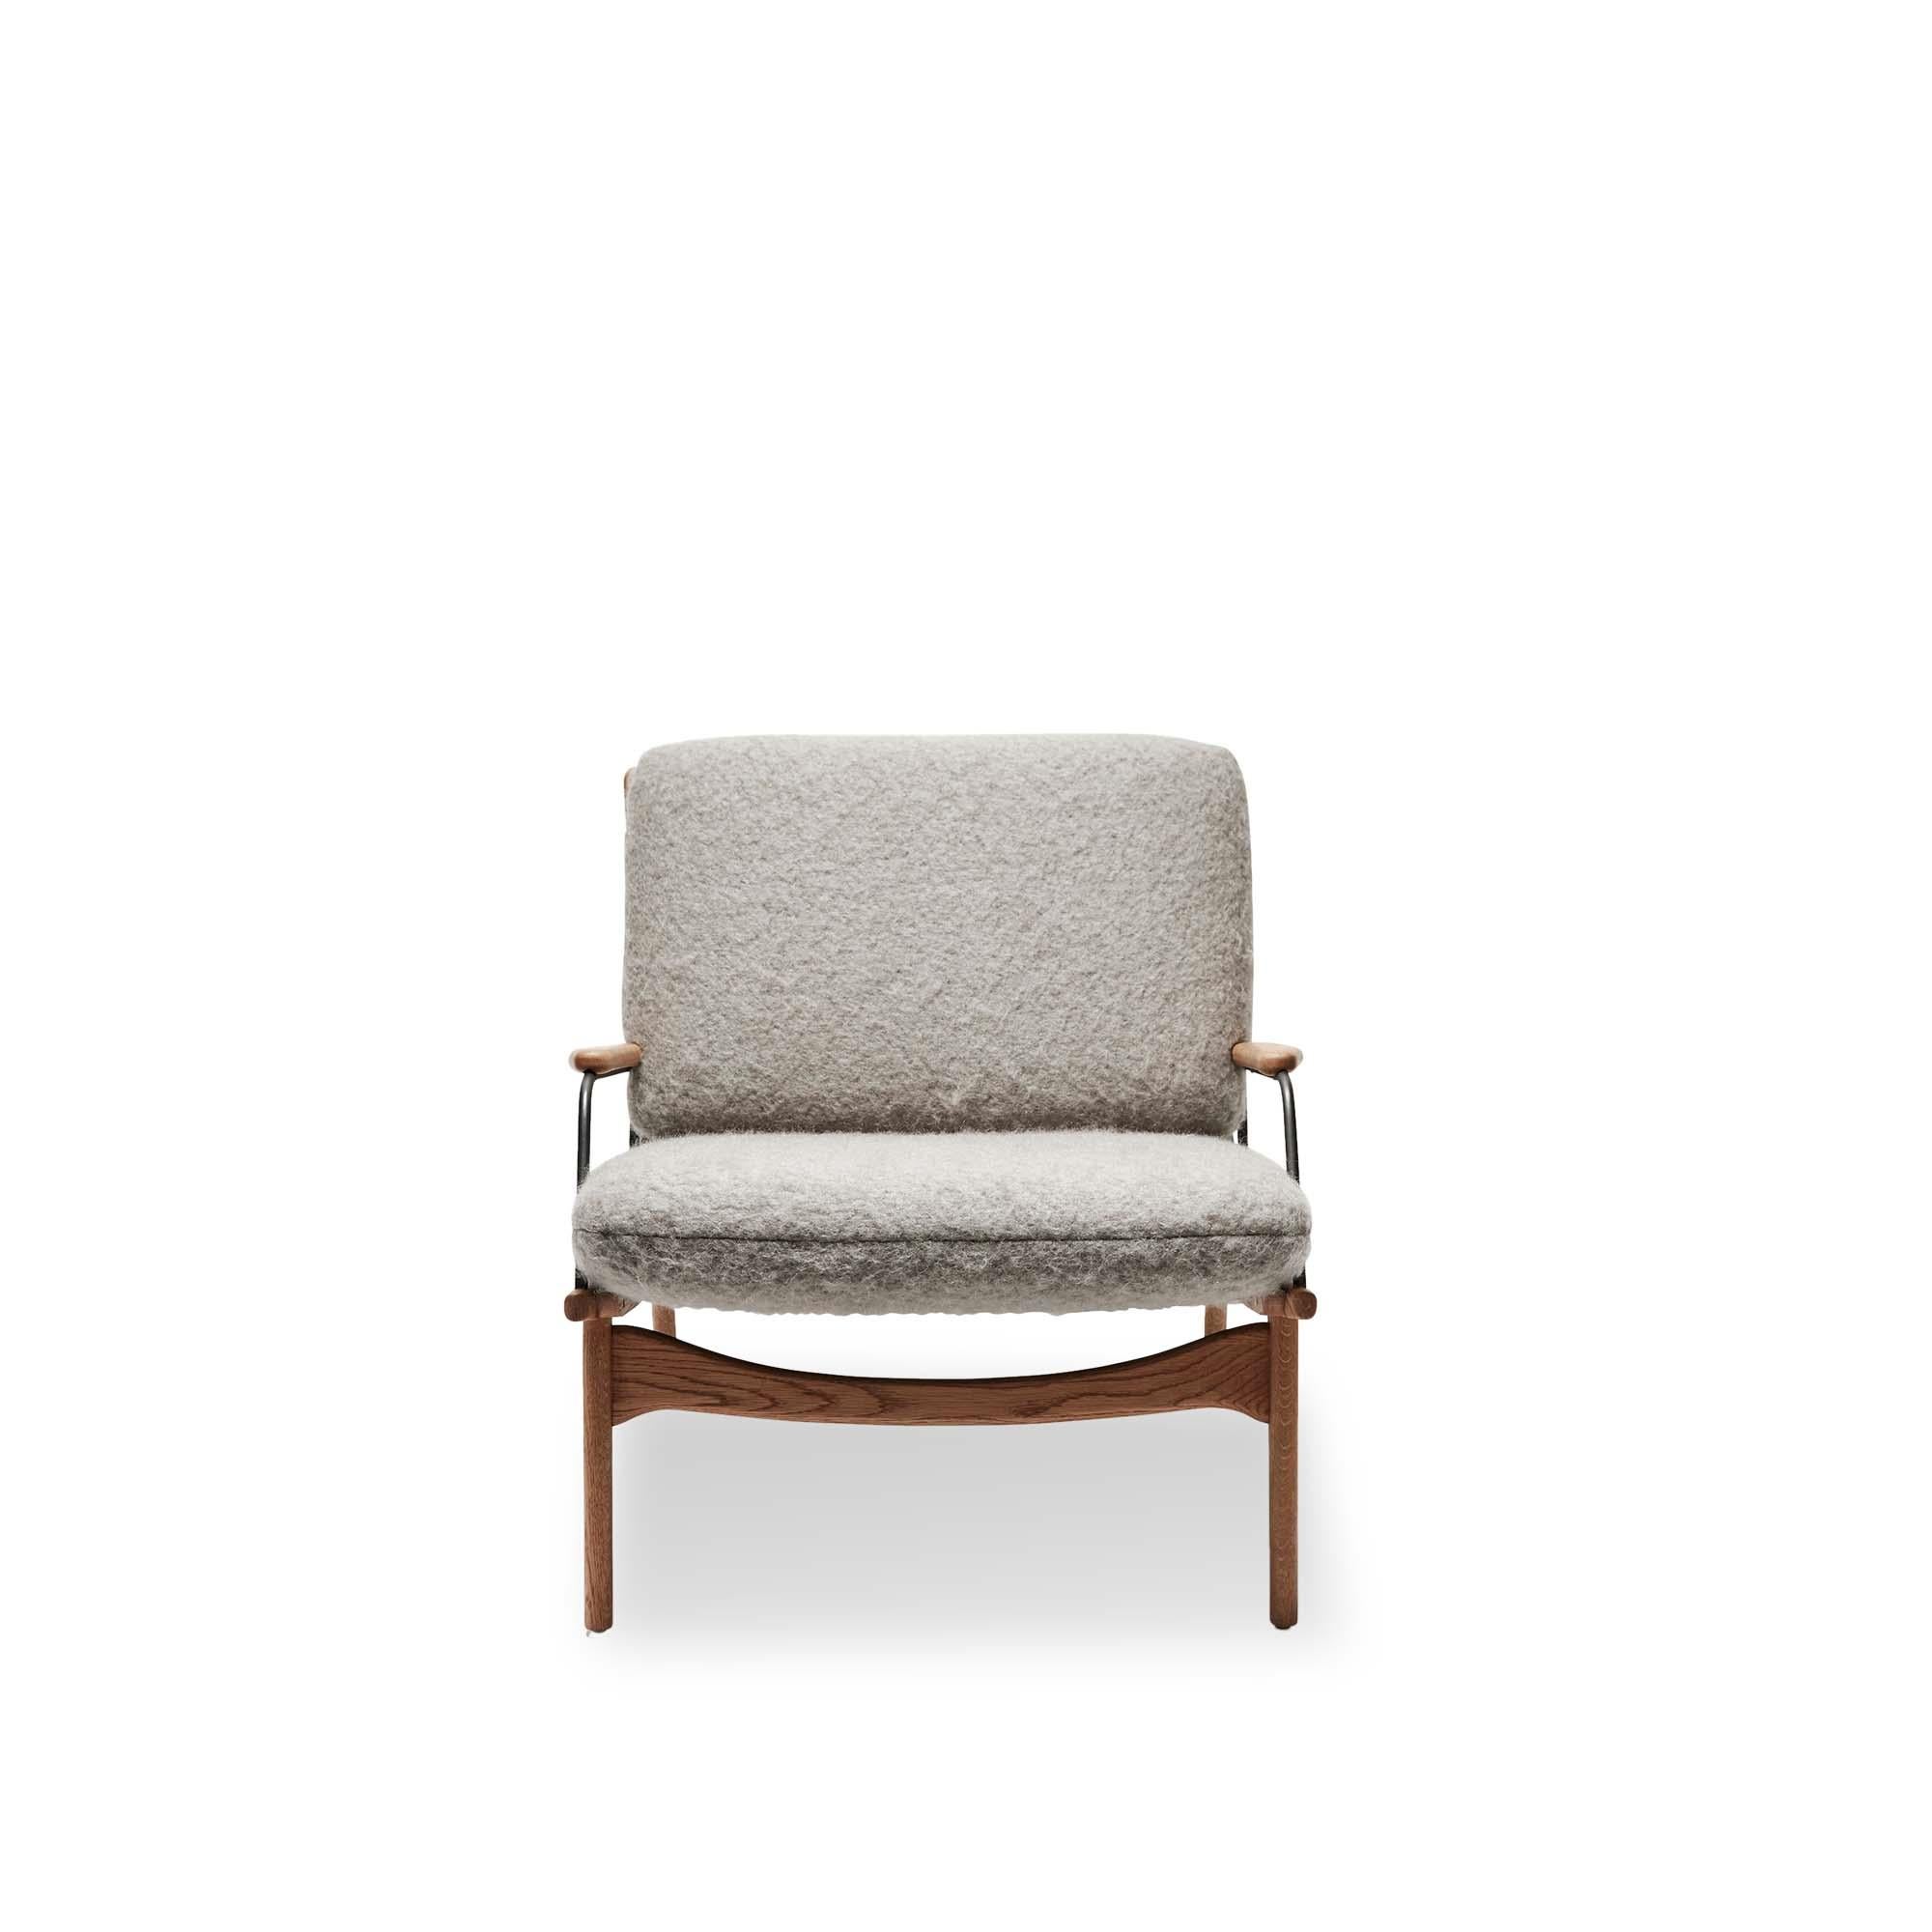 Fauteuil de fabricant par Lawson-Fenning. Le fauteuil Maker's Armchair est une chaise à structure en noyer ou en chêne massif, avec un harnais en cuir et des détails en laiton sur l'assise et le dossier. Les coussins d'assise et de dossier sont